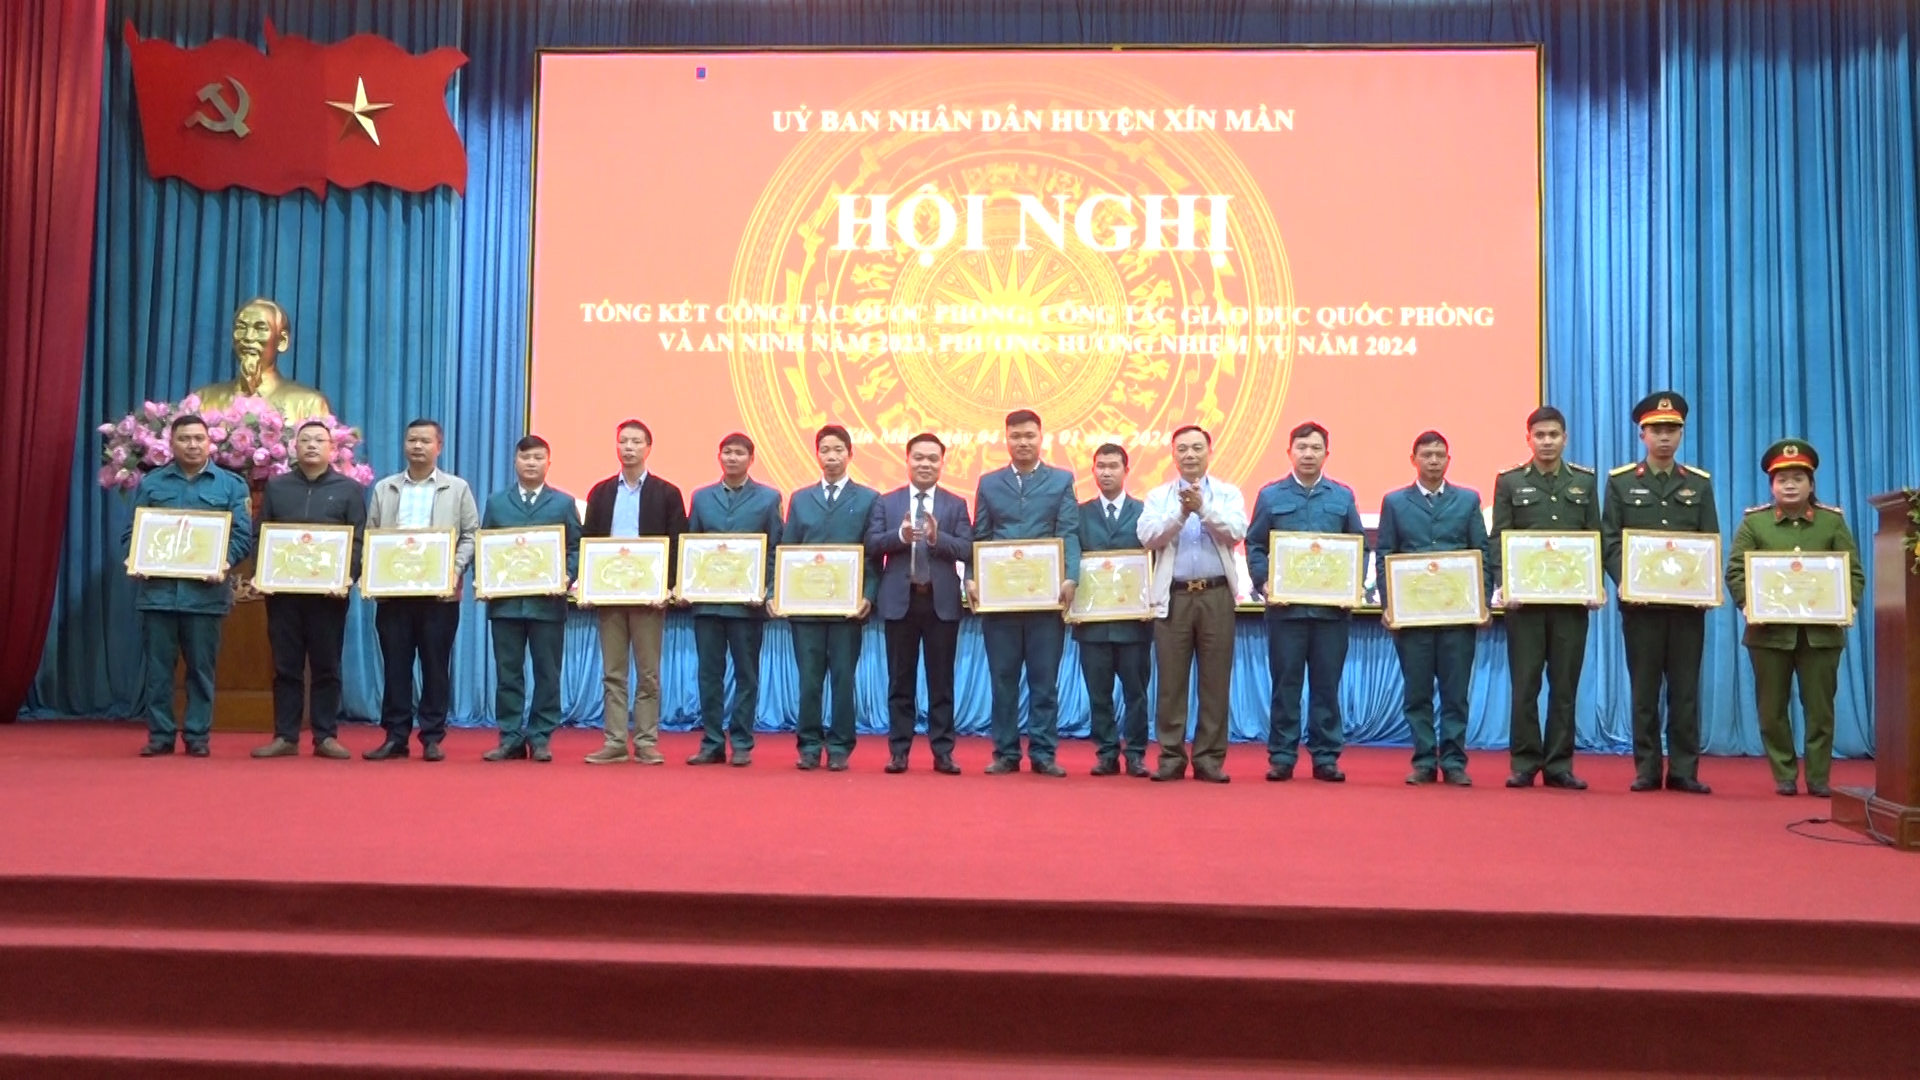 Huyện Xín Mần hội nghị tổng kết công tác Quốc phòng, giáo dục Quốc phòng và an ninh năm 2023